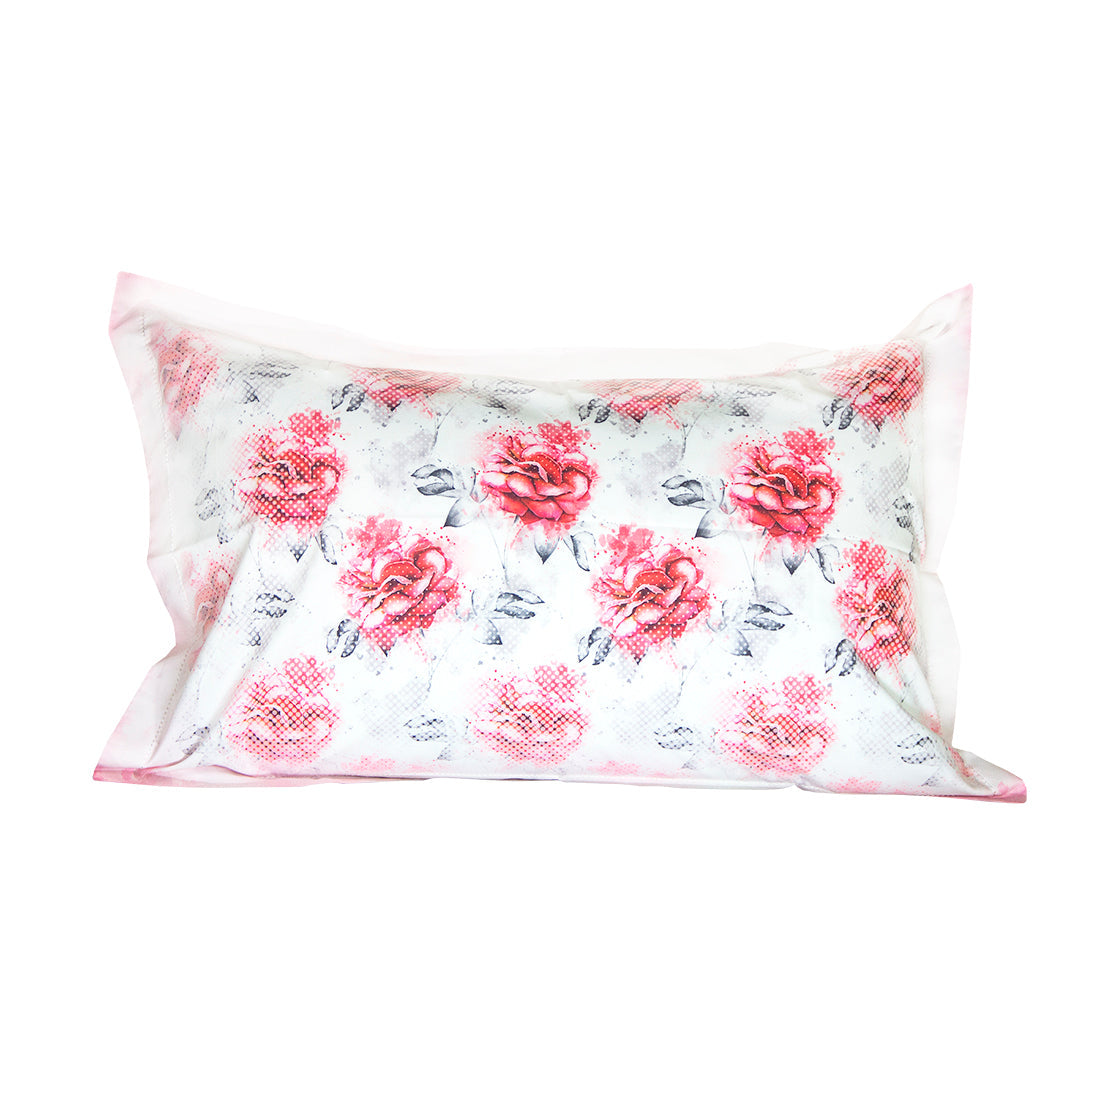 Pillow Cover-Printed- Mosaic Roses-Pair